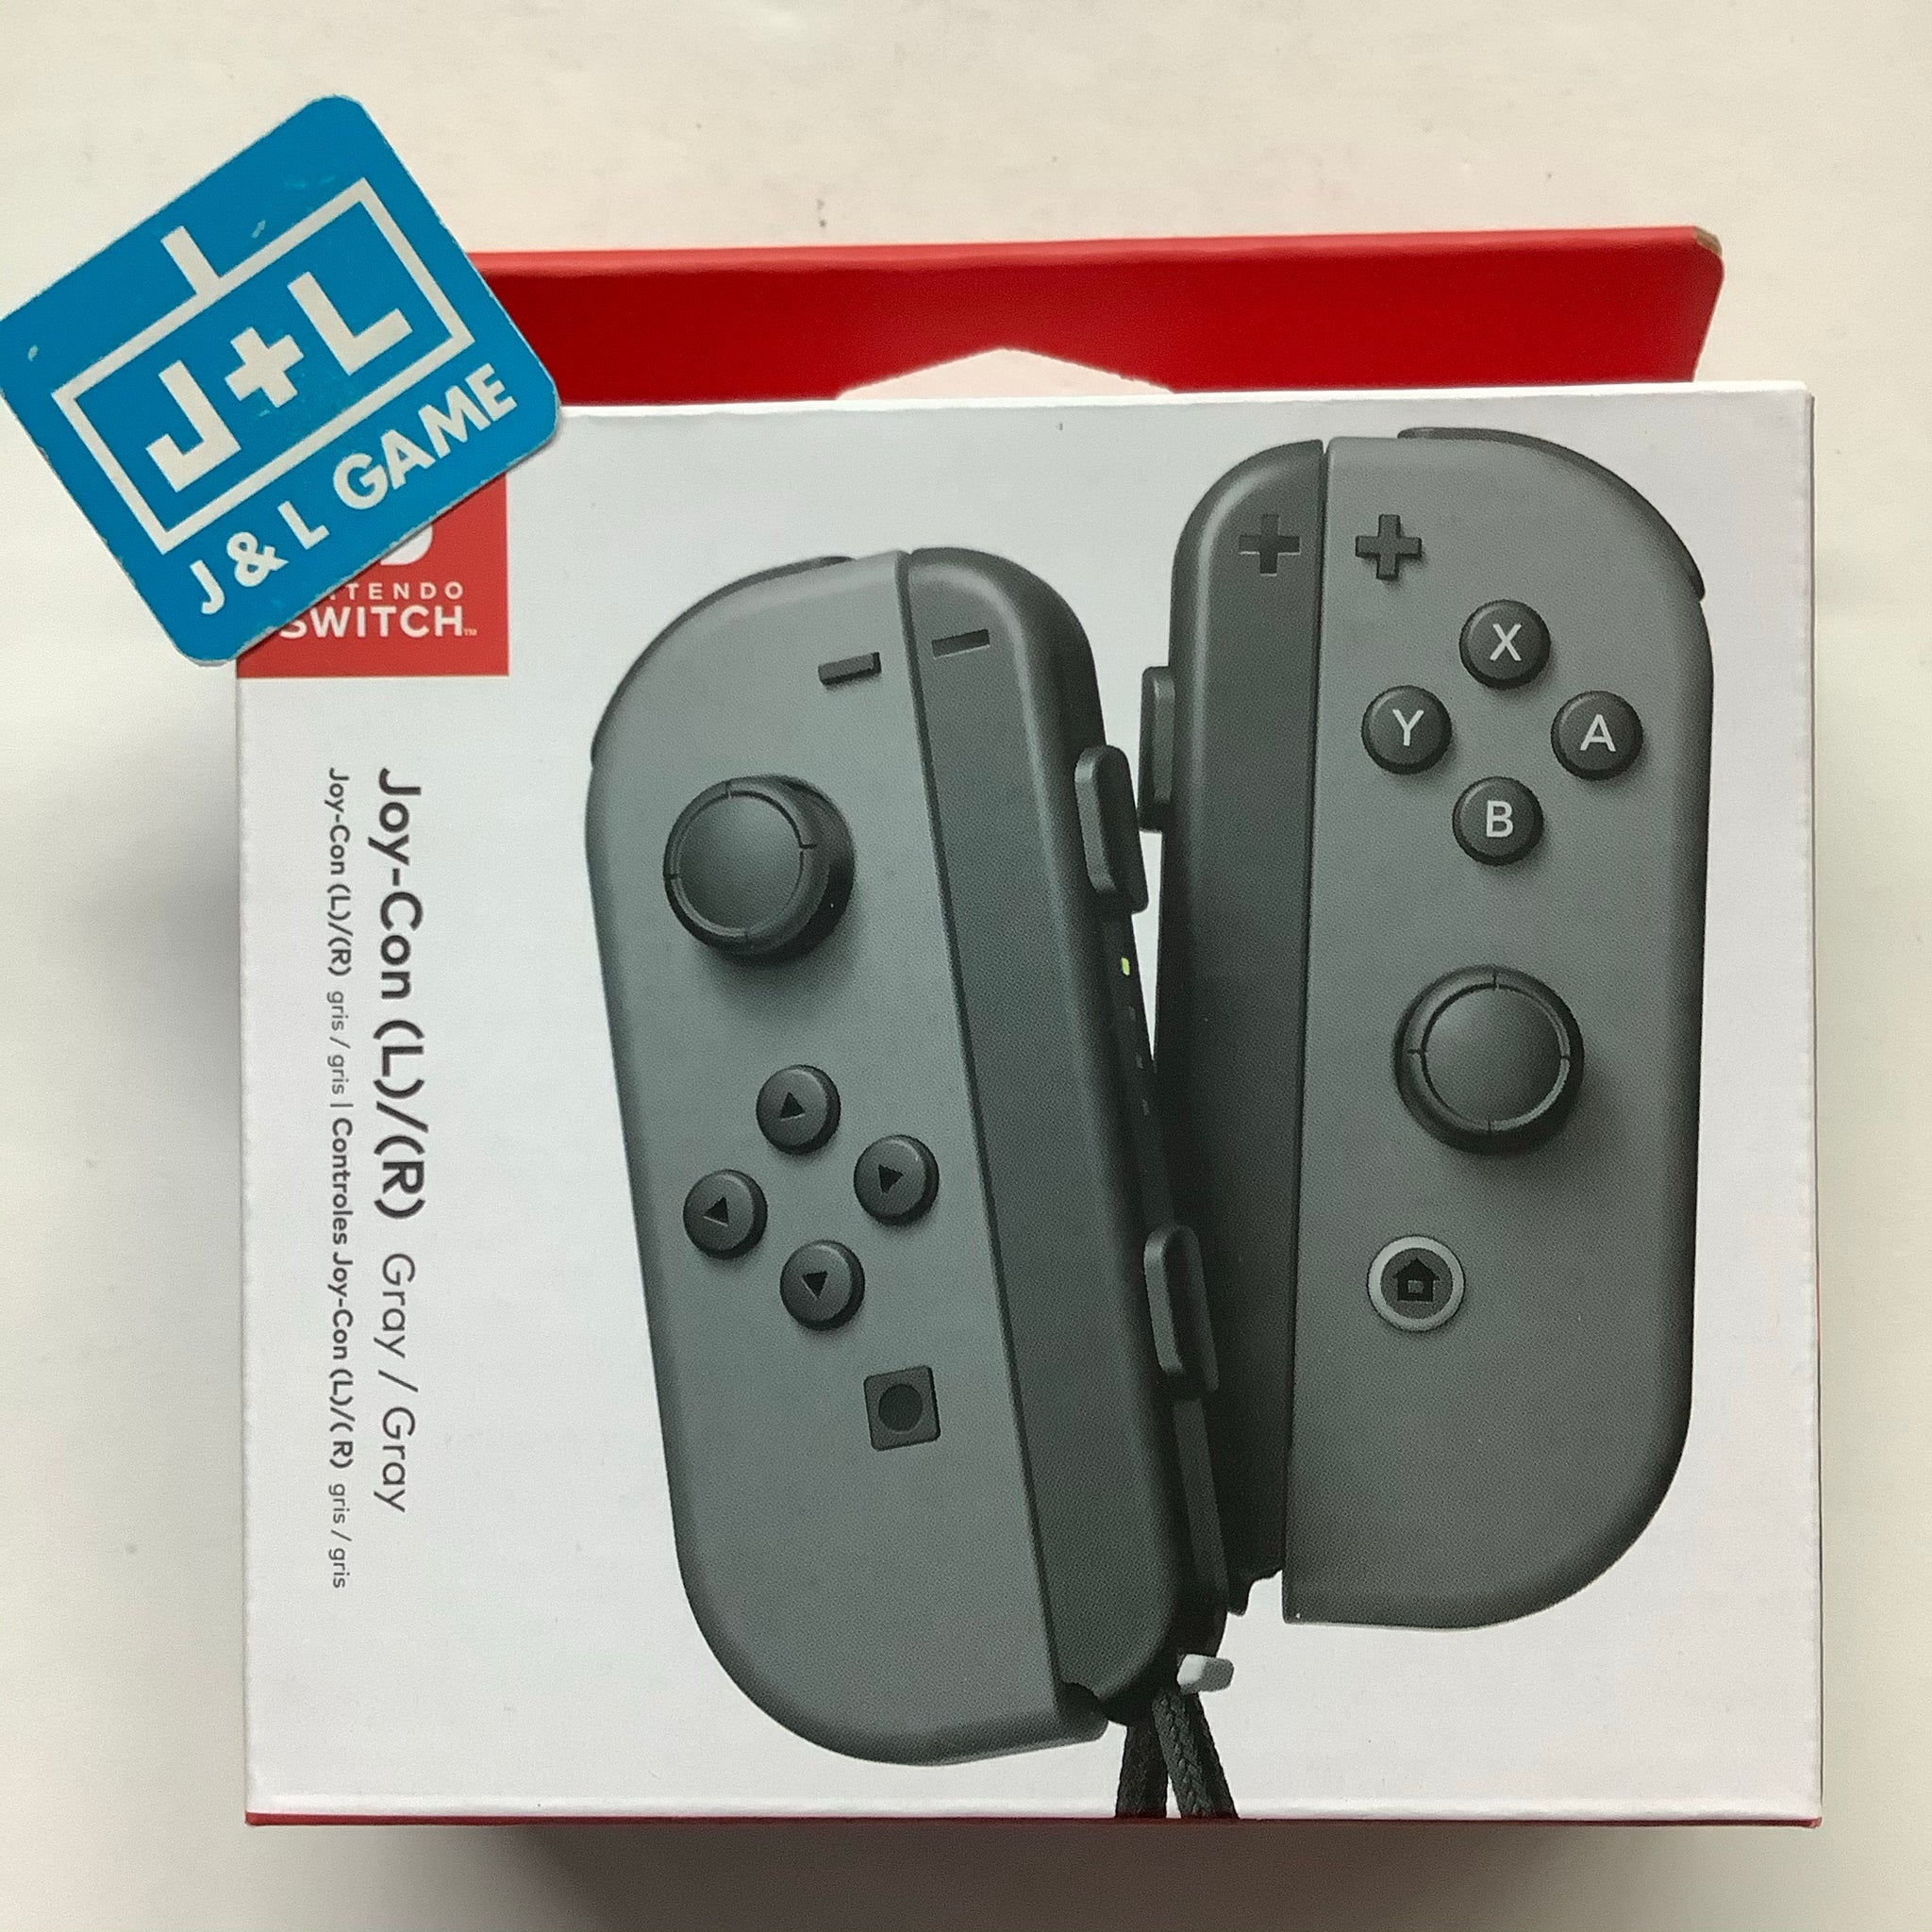 Nintendo Joy-Con (L/R) - Gray